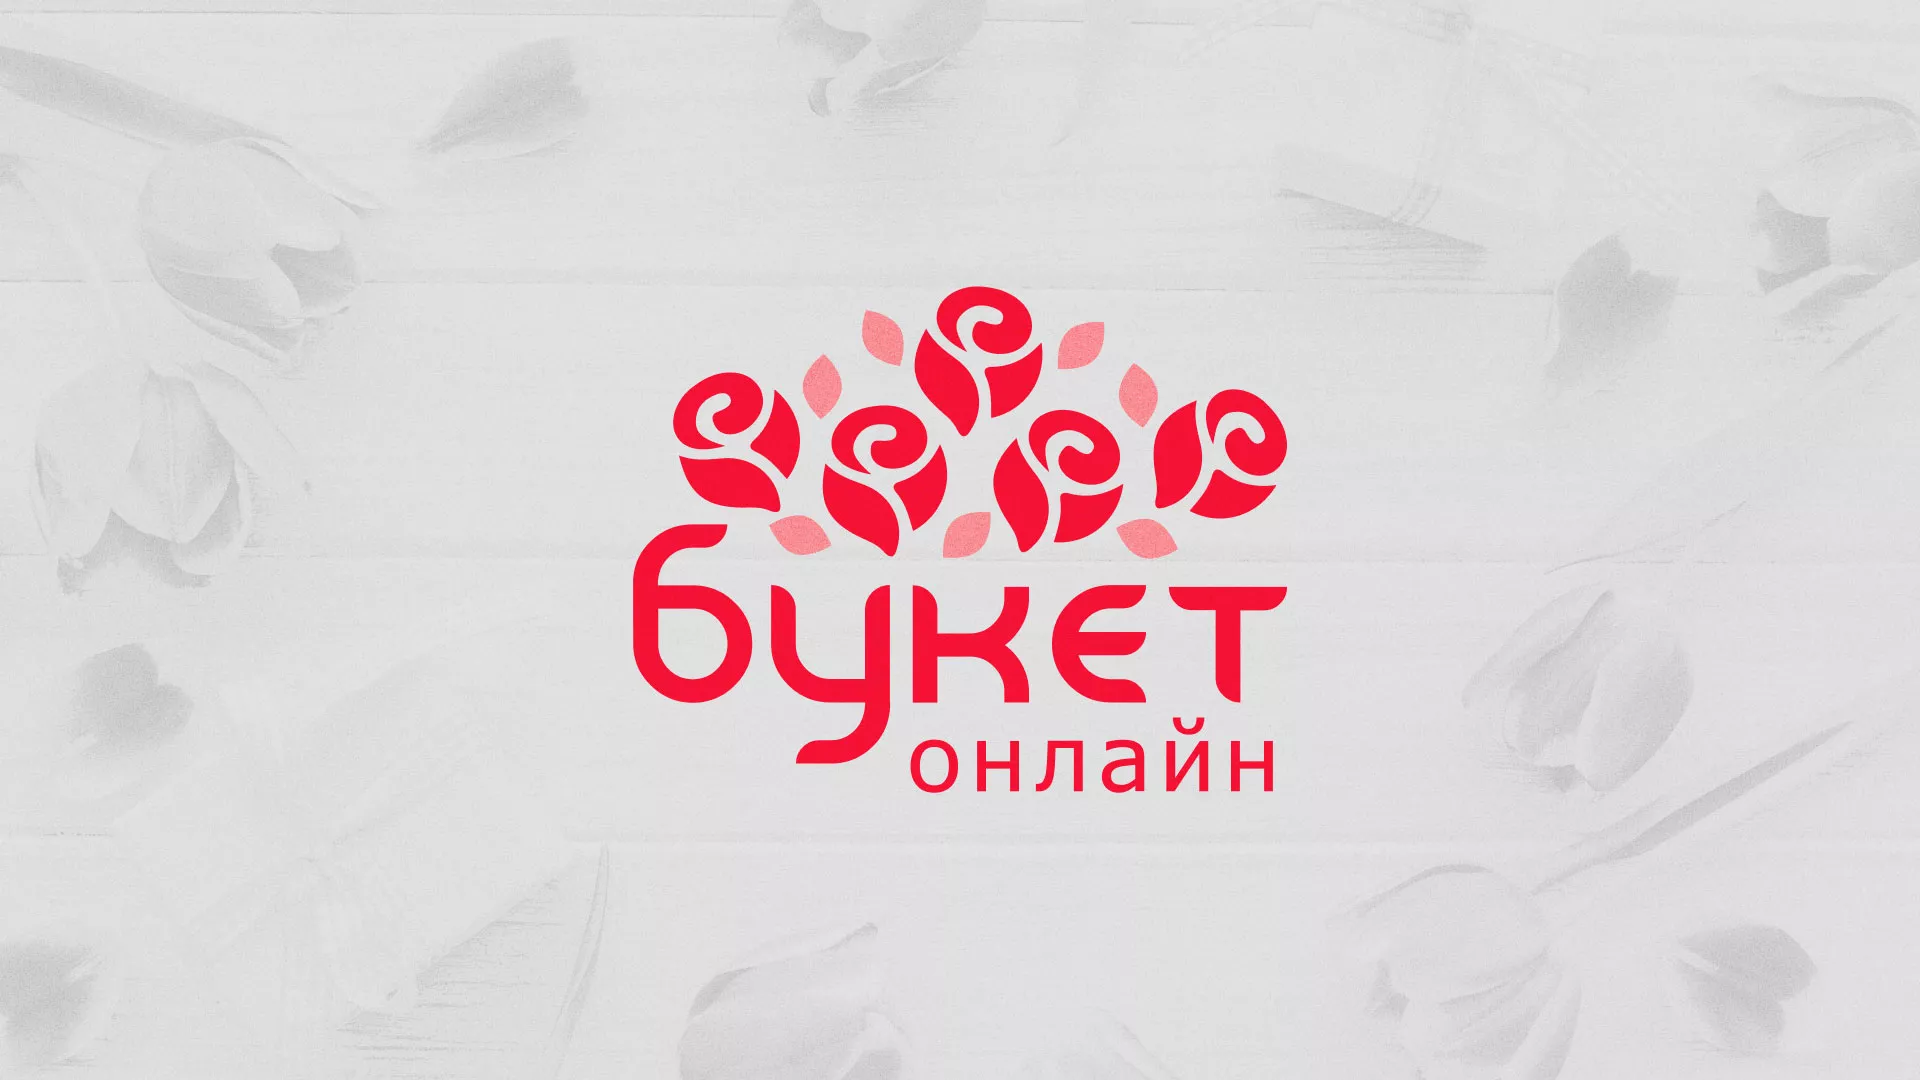 Создание интернет-магазина «Букет-онлайн» по цветам в Томске